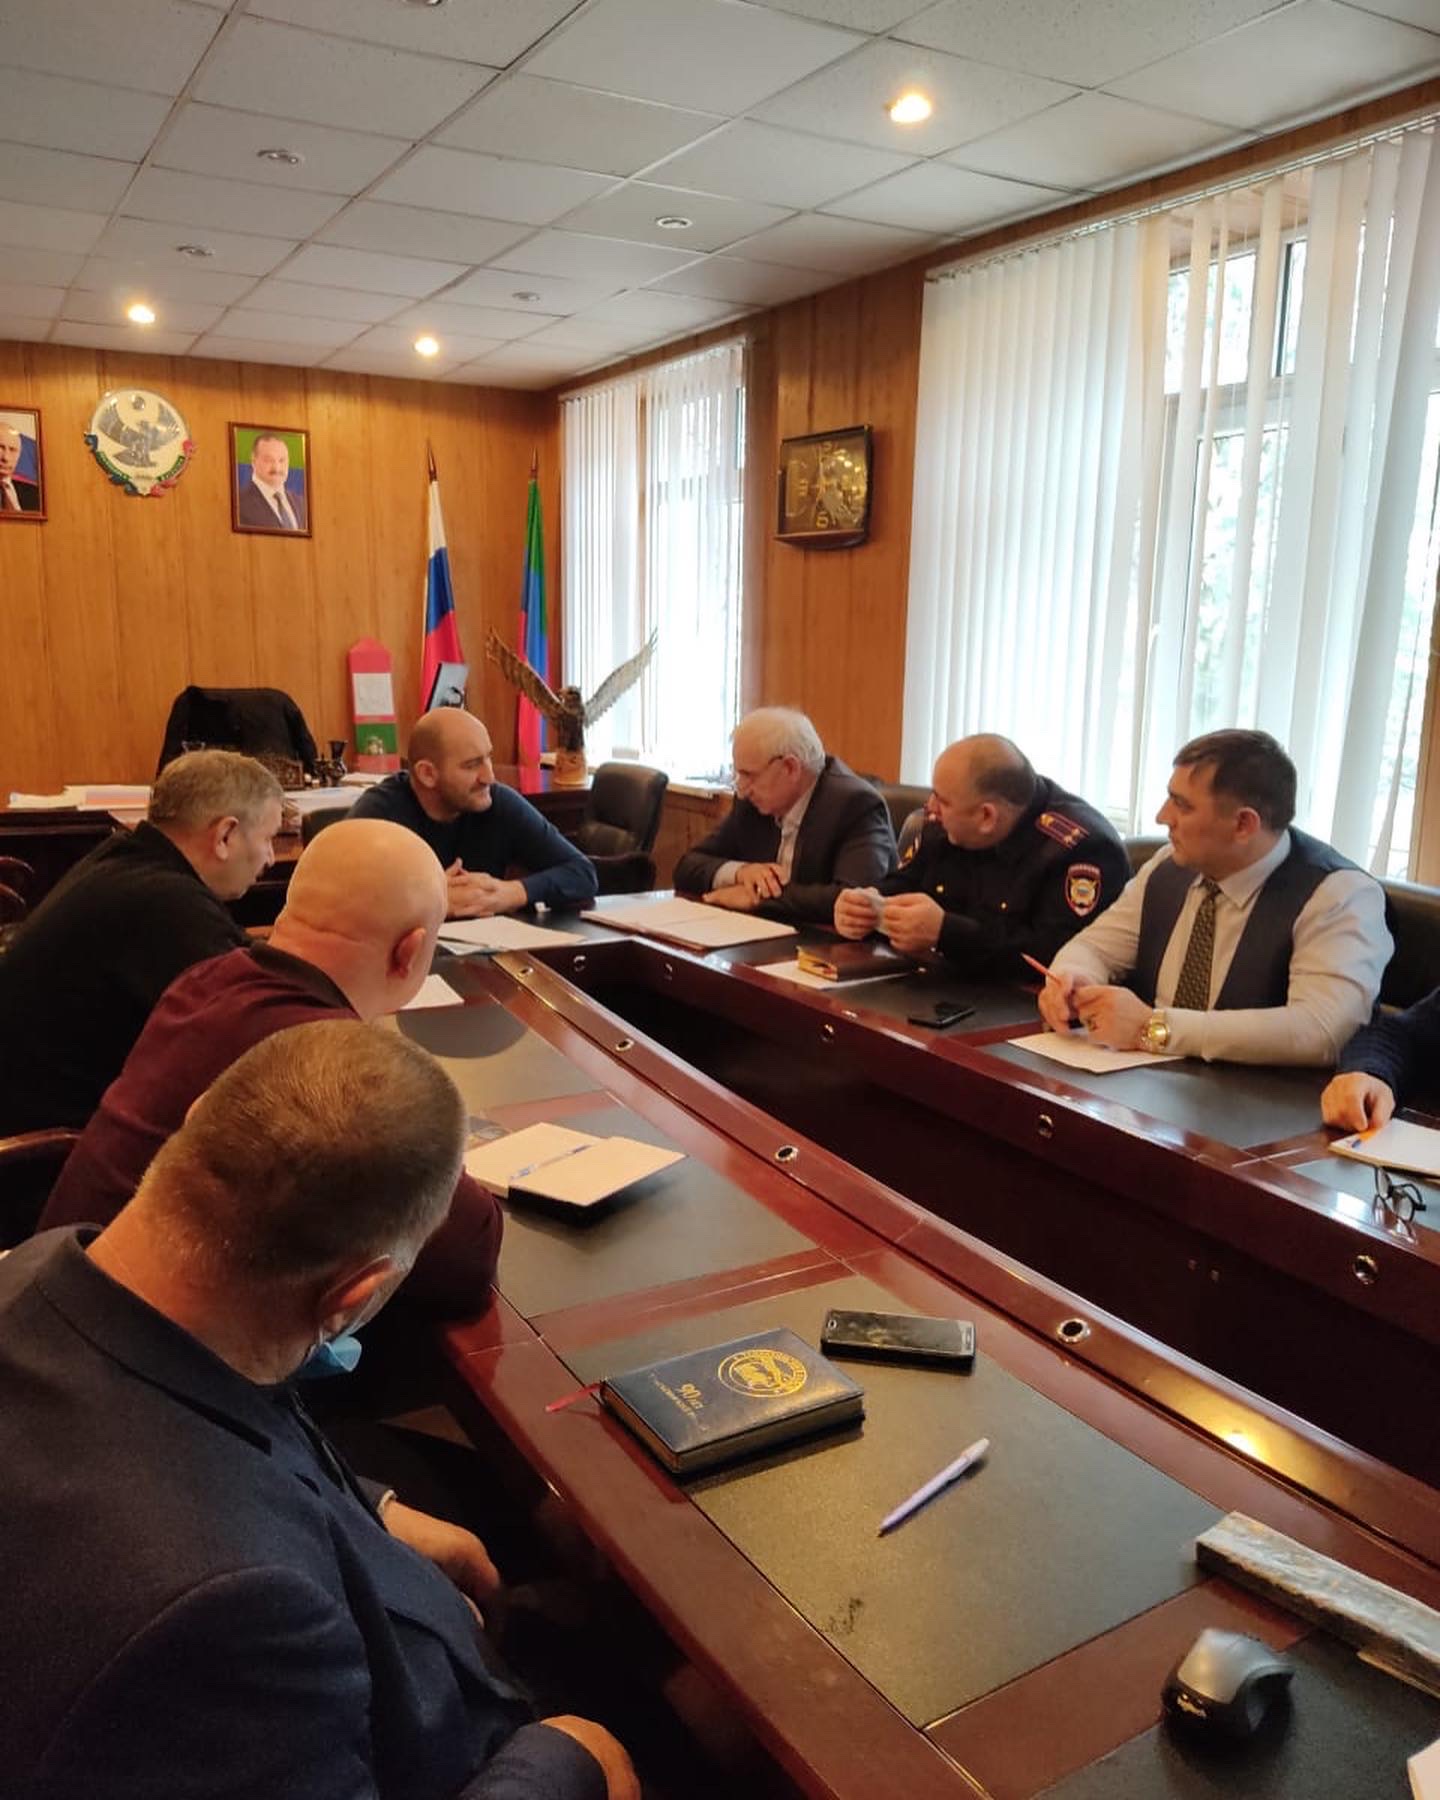 Меры обеспечения общественной безопасности в период праздников обсудили в Тляратинском районе